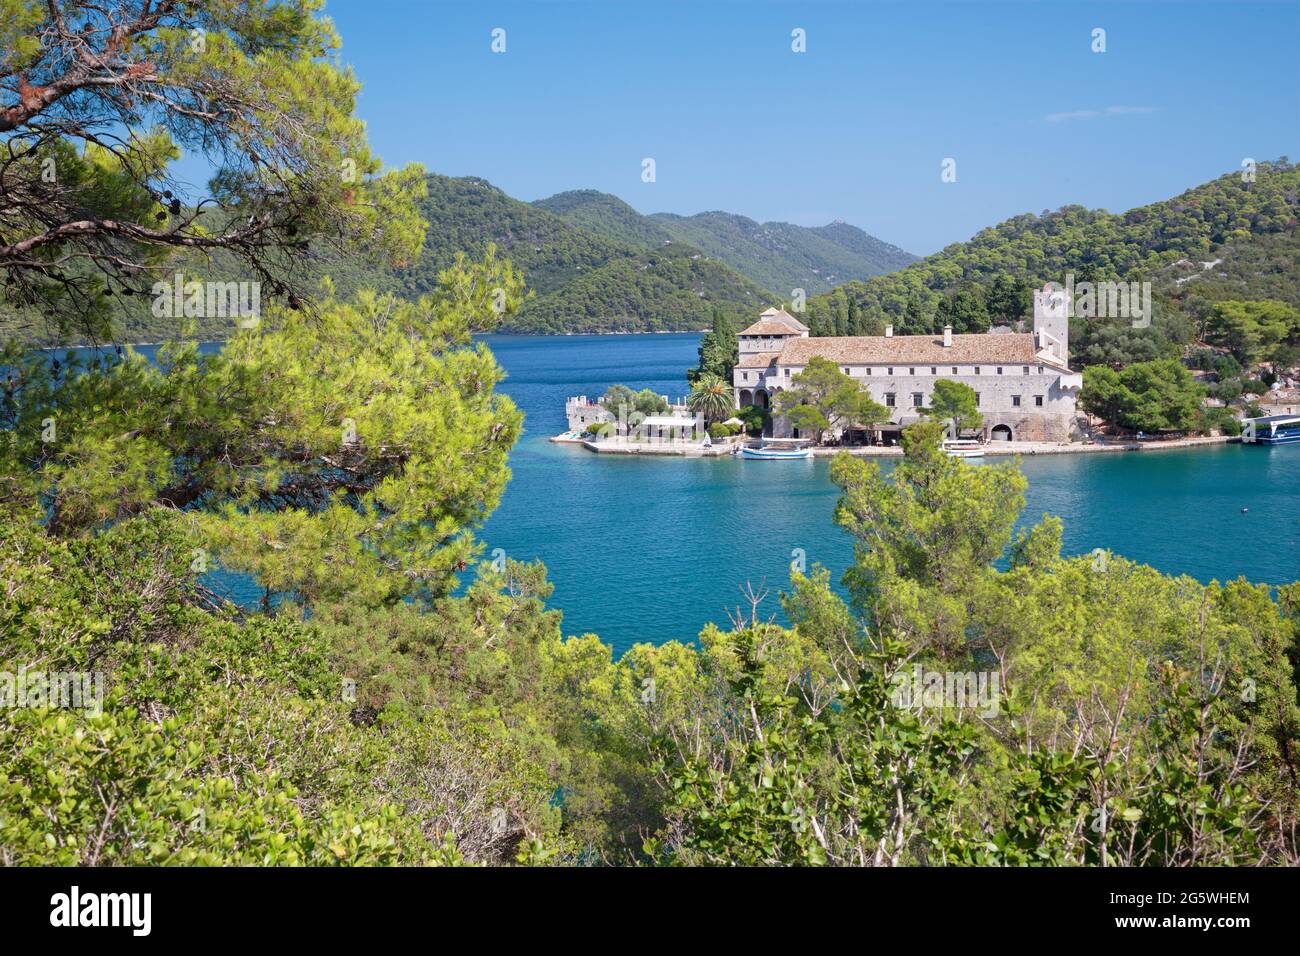 Croatie - Le St.Mary monastère bénédictin sur l'île de Mljet. Banque D'Images